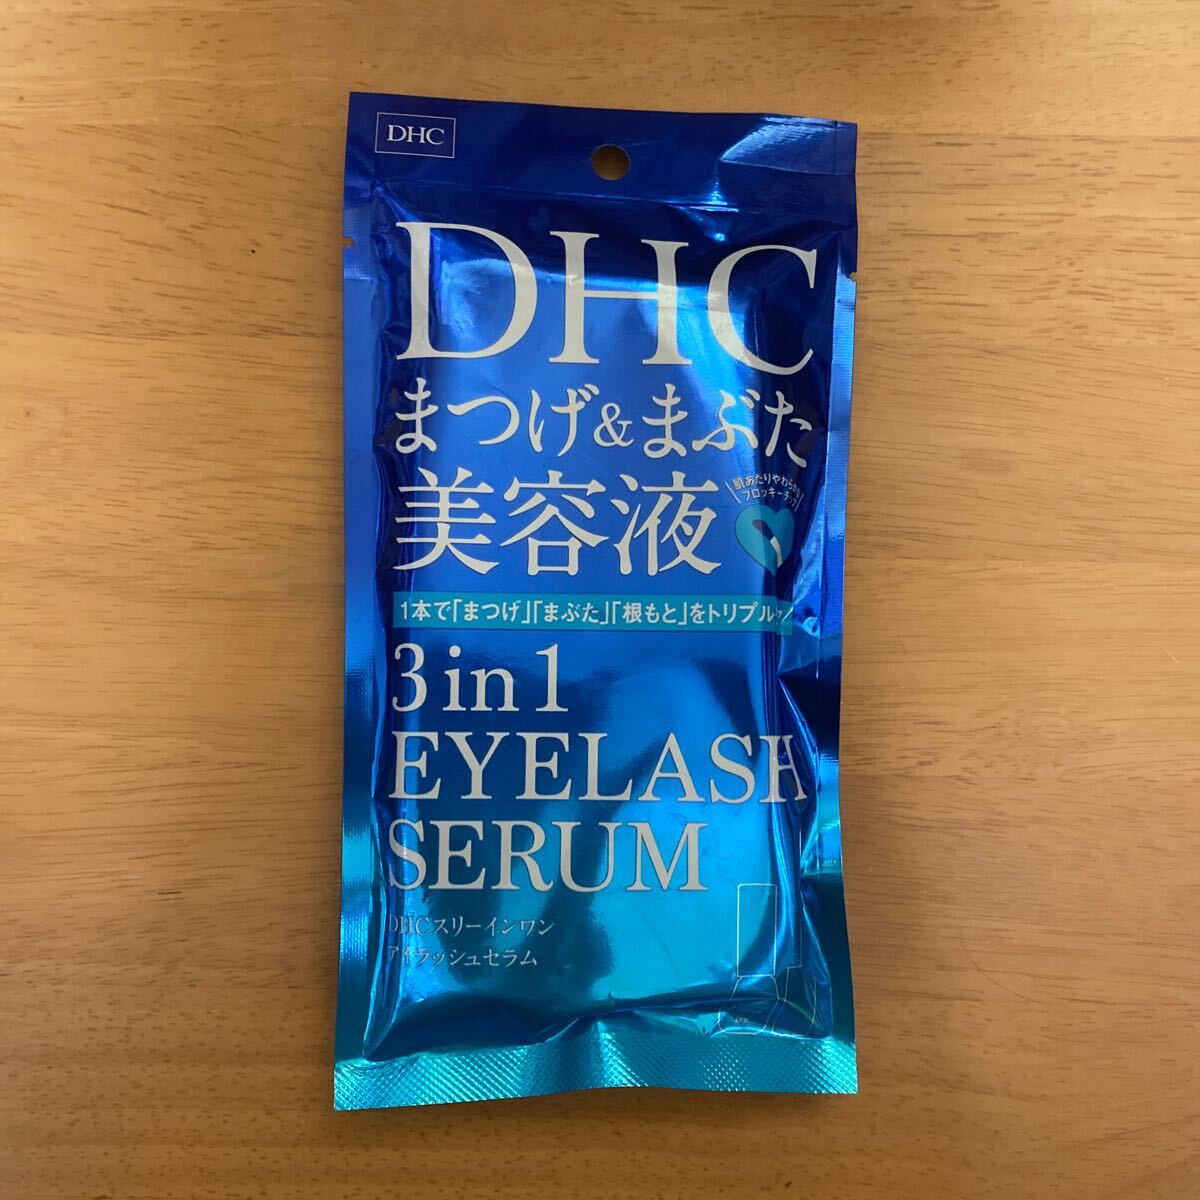 DHC eyelashes &... beauty care liquid three in one eyelashes Sera m